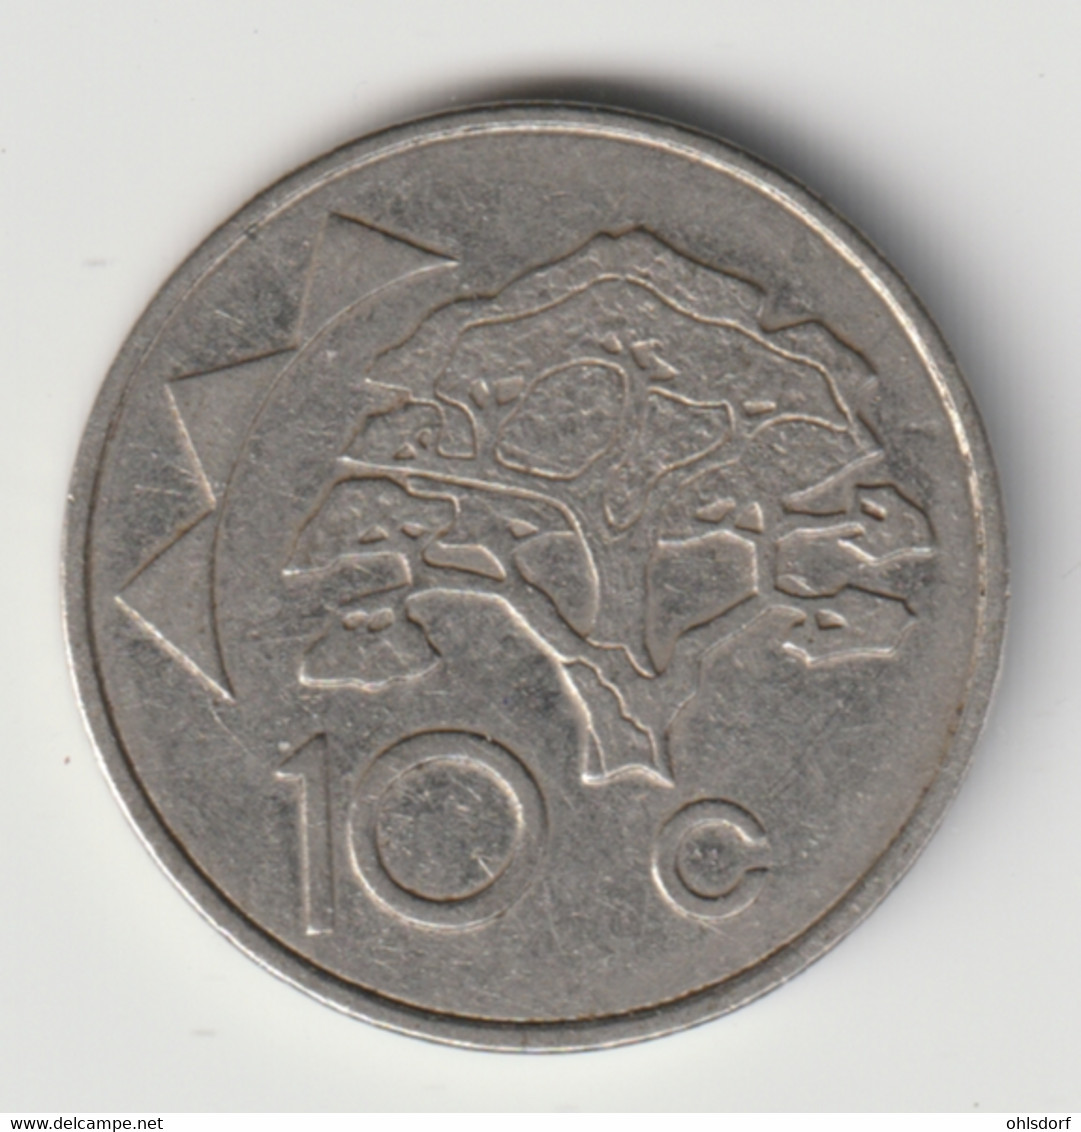 NAMIBIA 1998: 10 Cents, KM 2 - Namibia